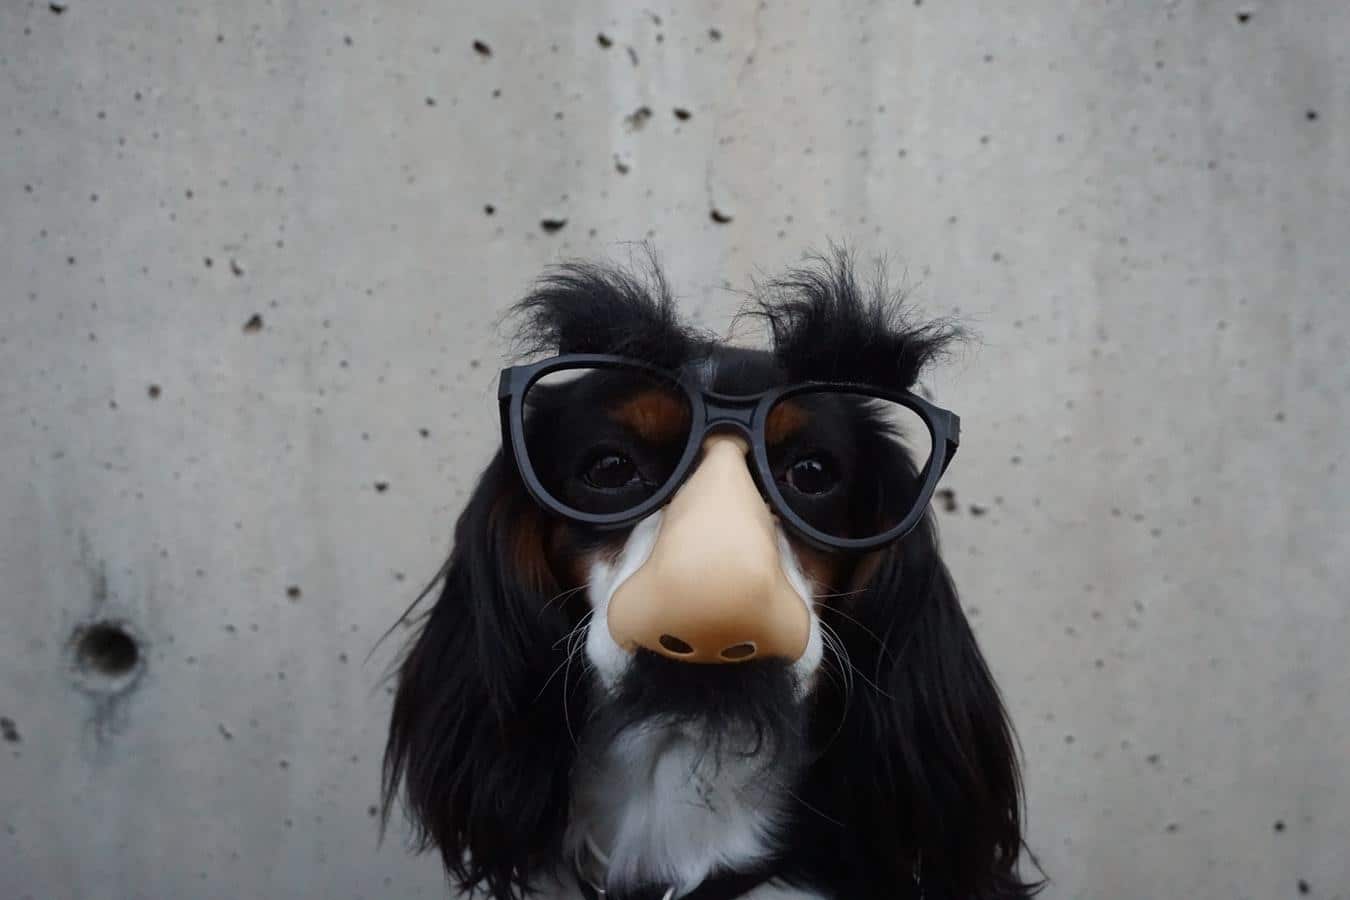 a dog disguise like a human